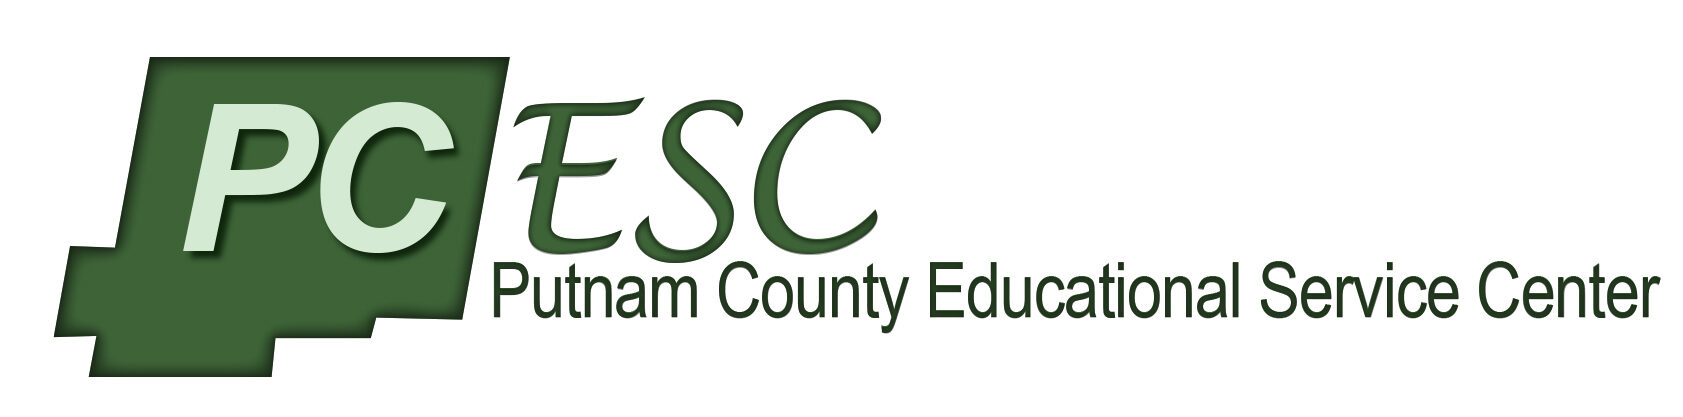 PCESC Logo